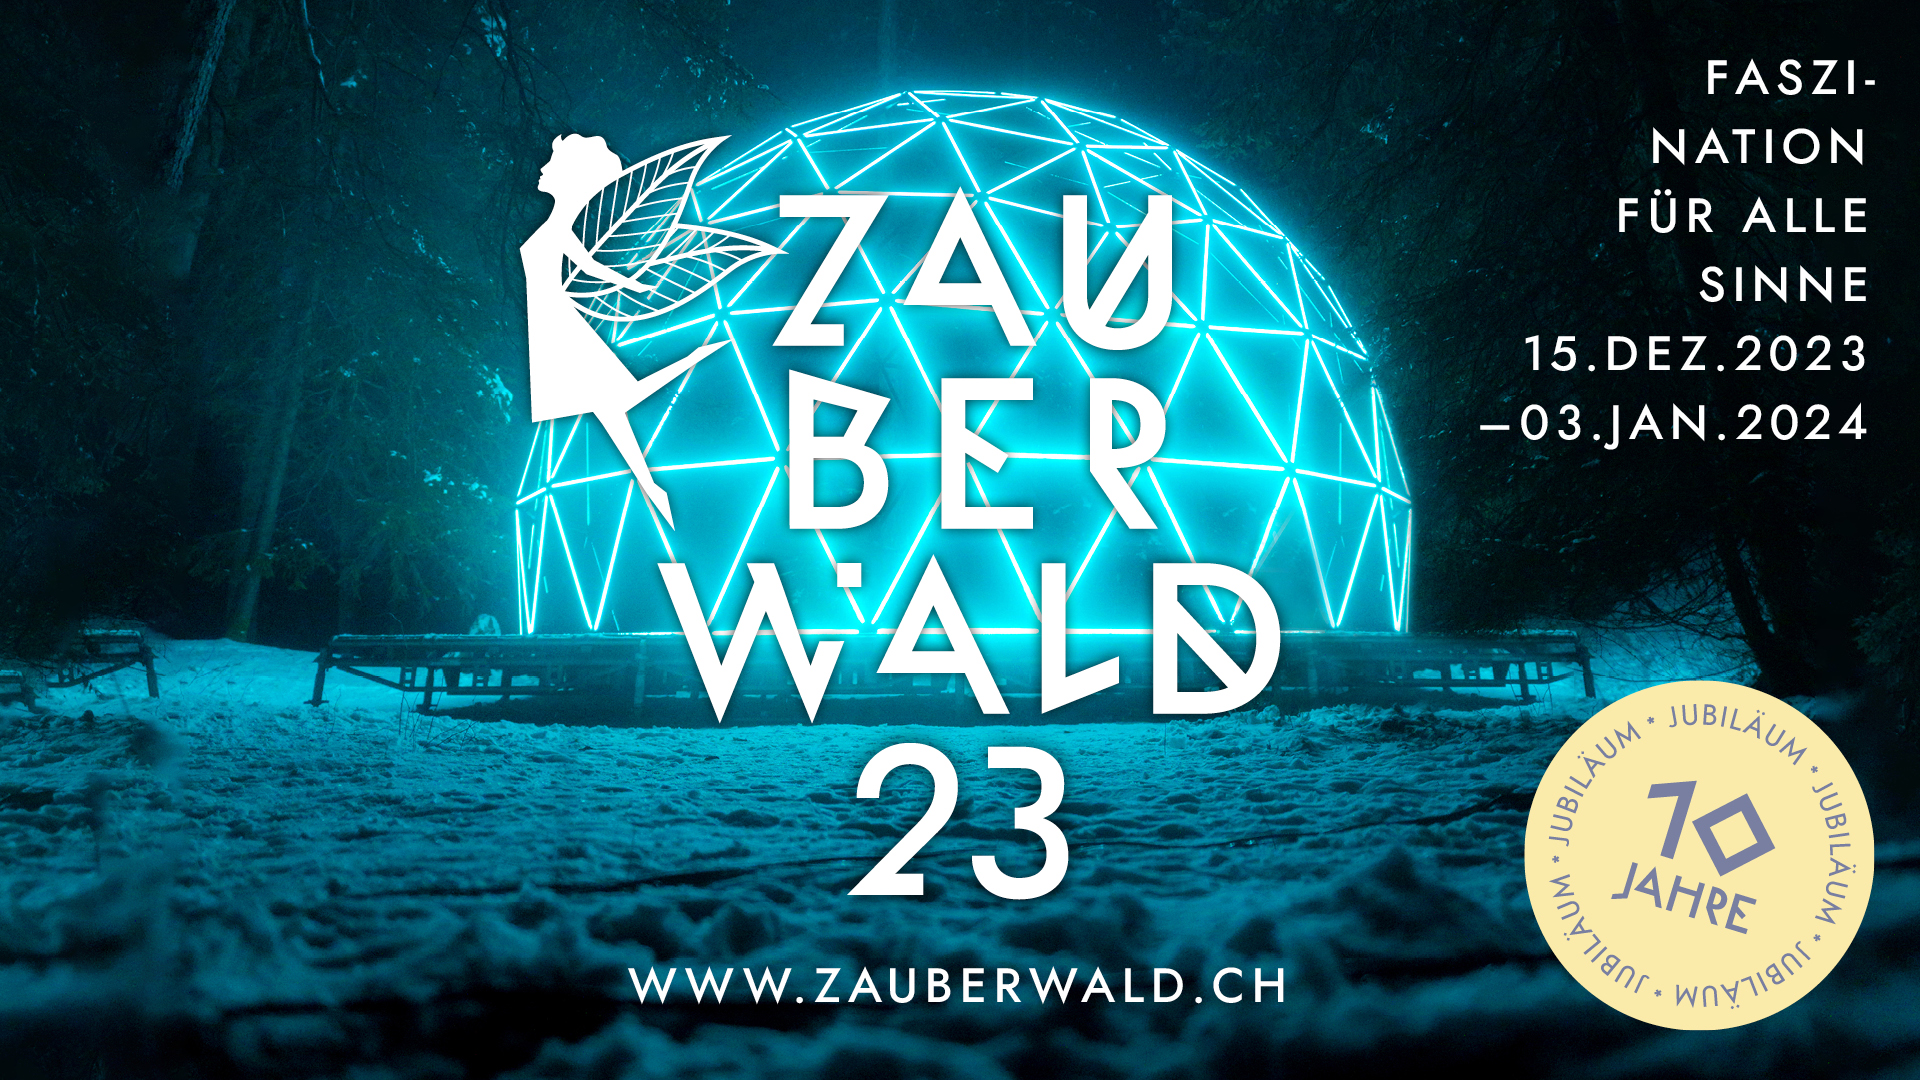 (c) Zauberwald.ch